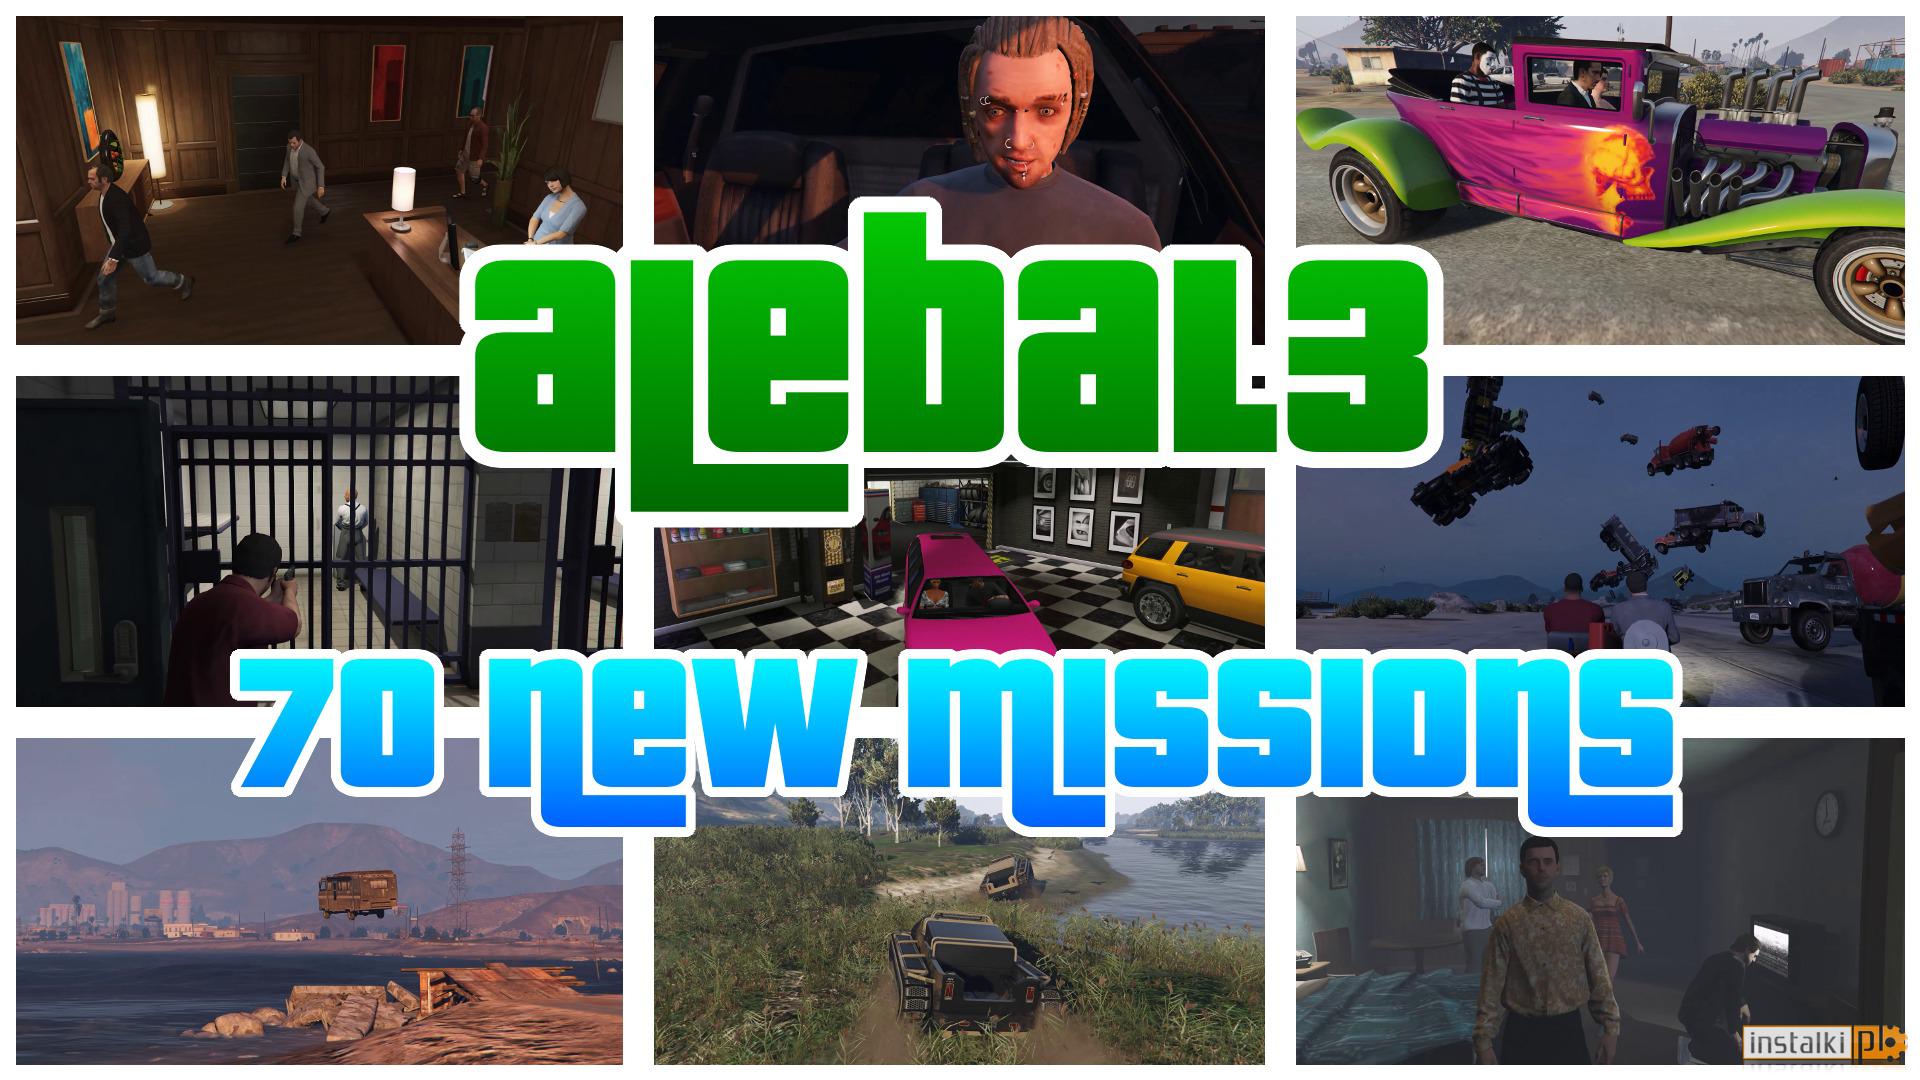 GTA 5 – 70 new missions